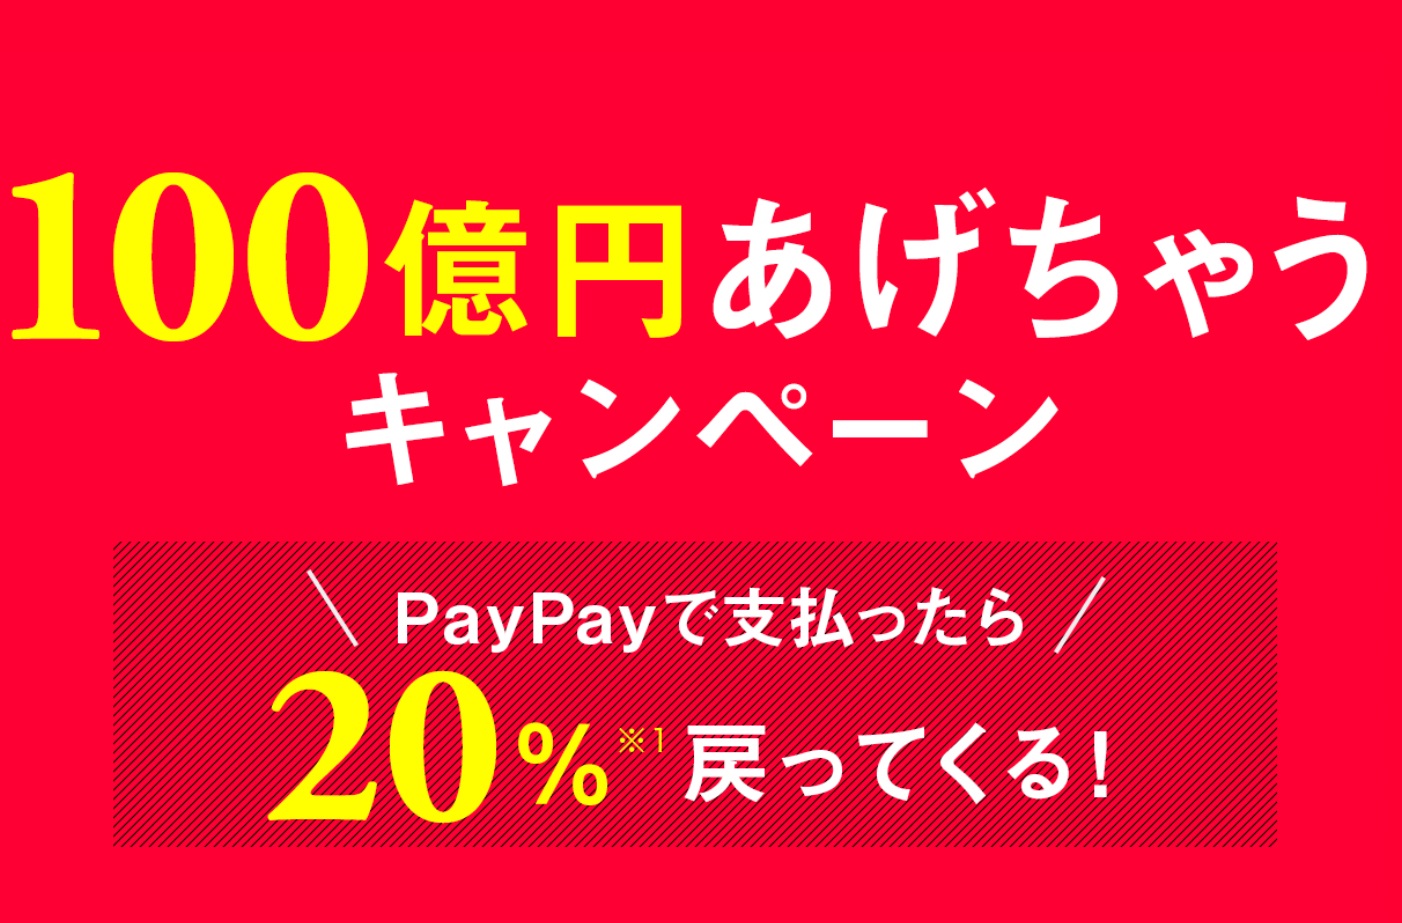 PayPay|お得なキャンペーン情報まとめ